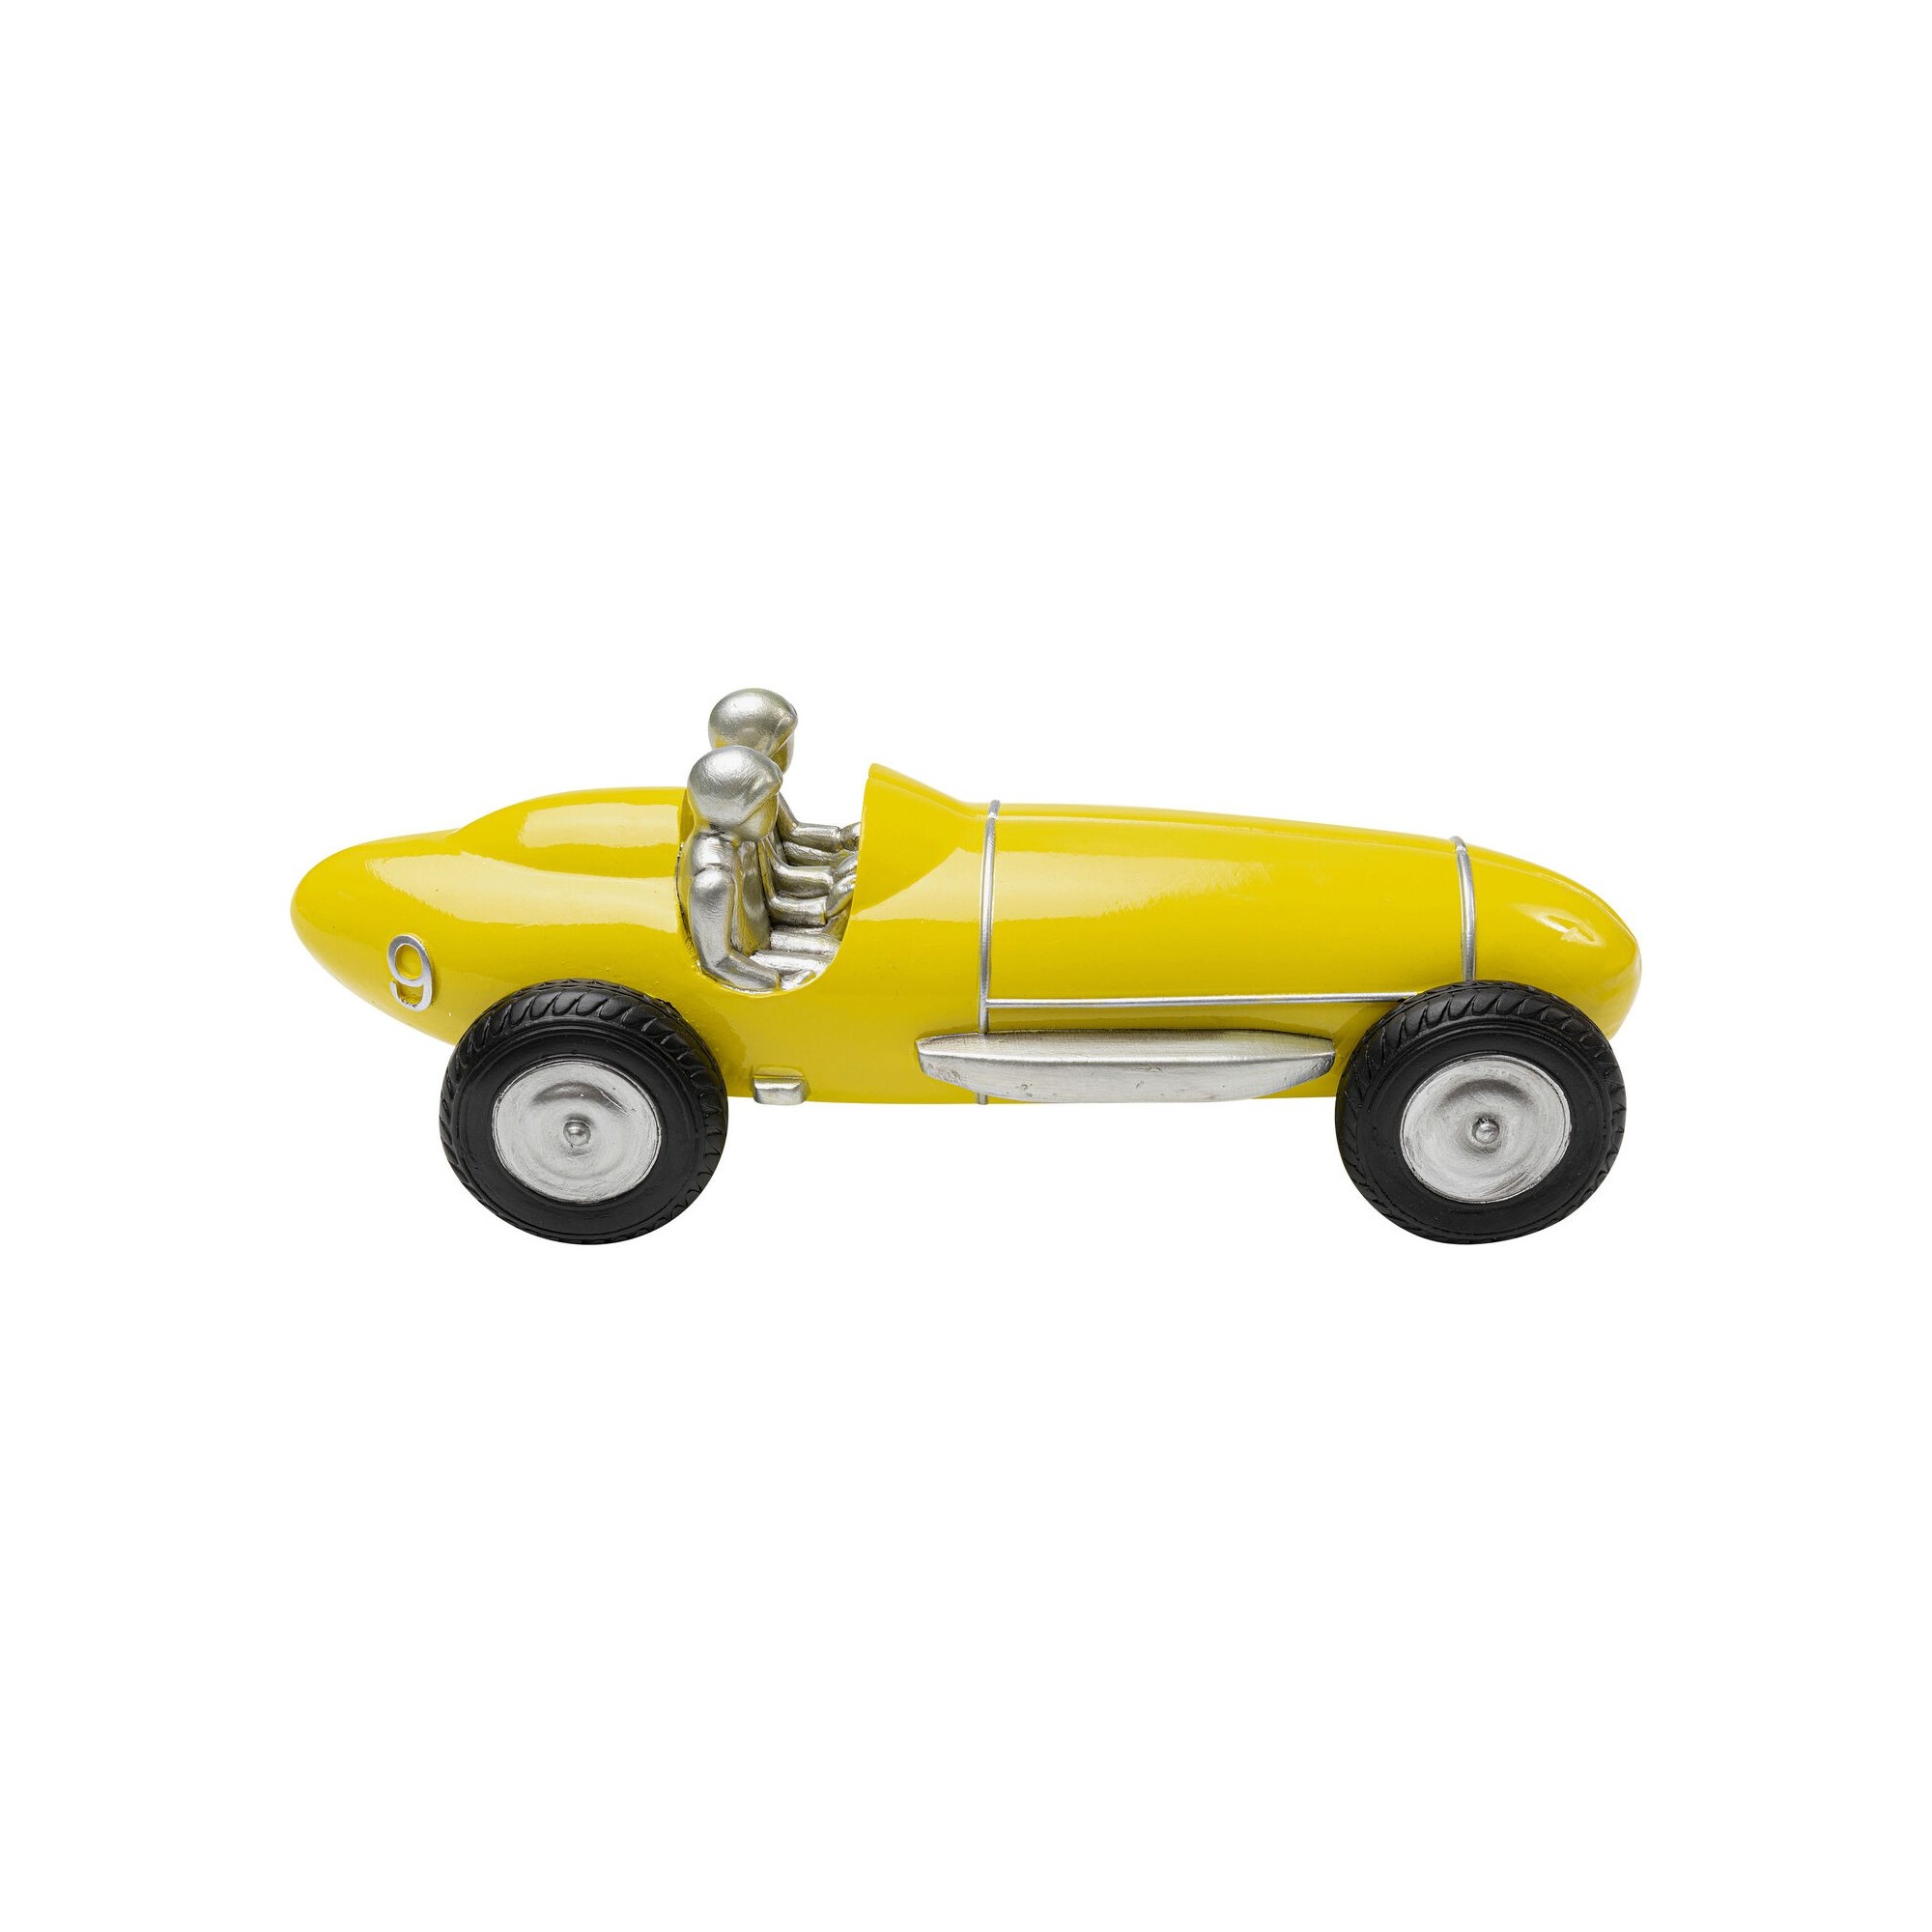 Objet décoratif Racing Car jaune 9cm